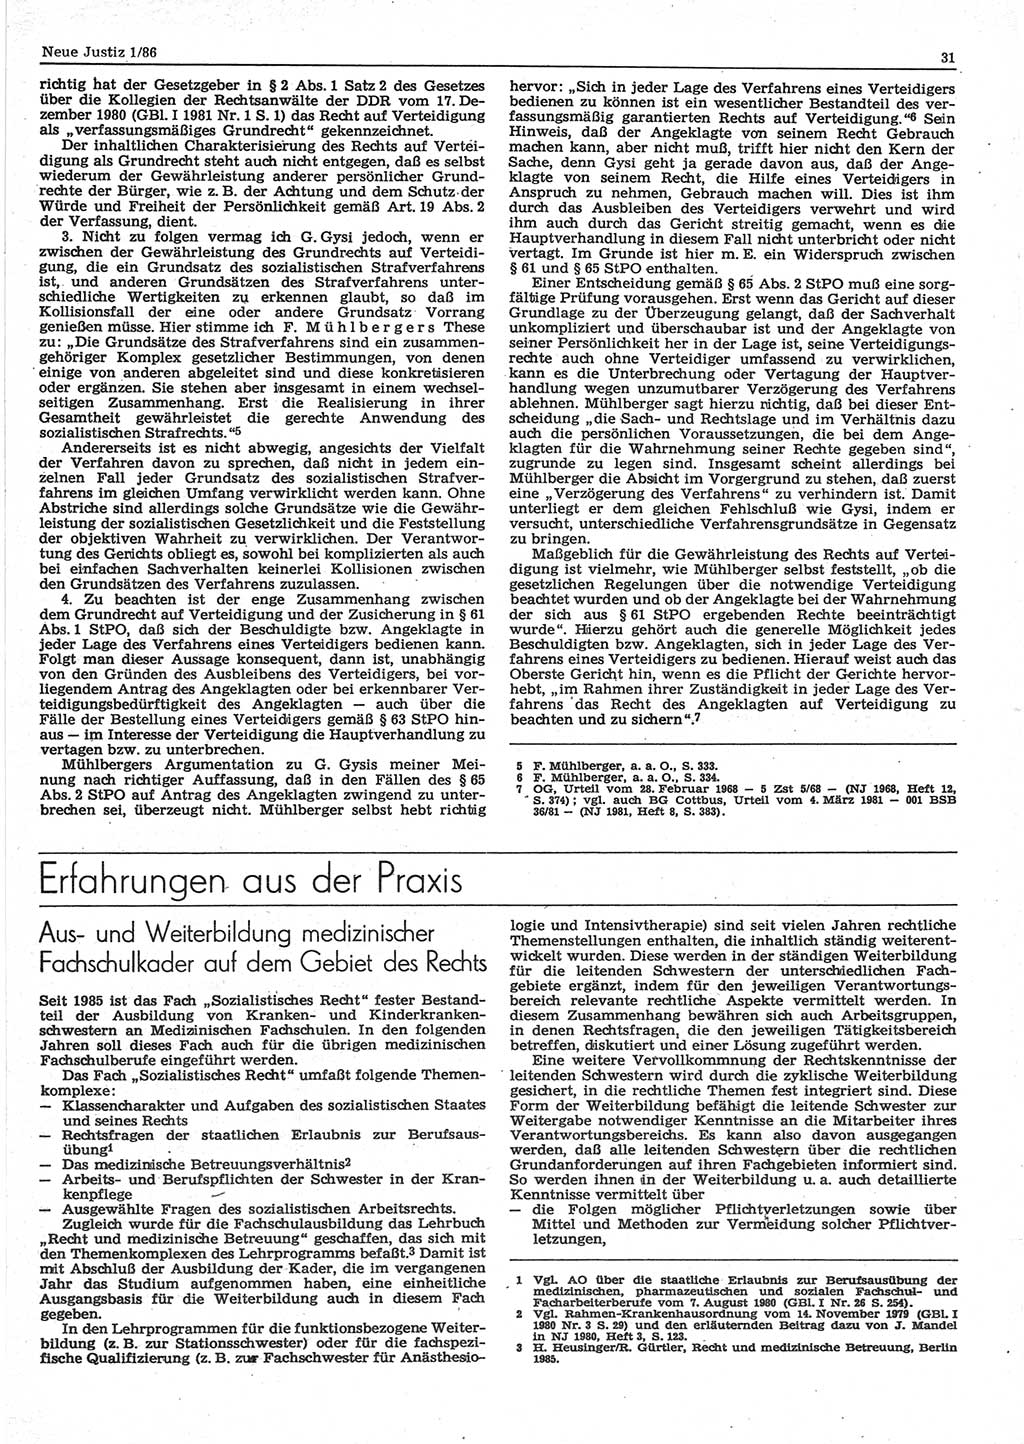 Neue Justiz (NJ), Zeitschrift für sozialistisches Recht und Gesetzlichkeit [Deutsche Demokratische Republik (DDR)], 40. Jahrgang 1986, Seite 31 (NJ DDR 1986, S. 31)